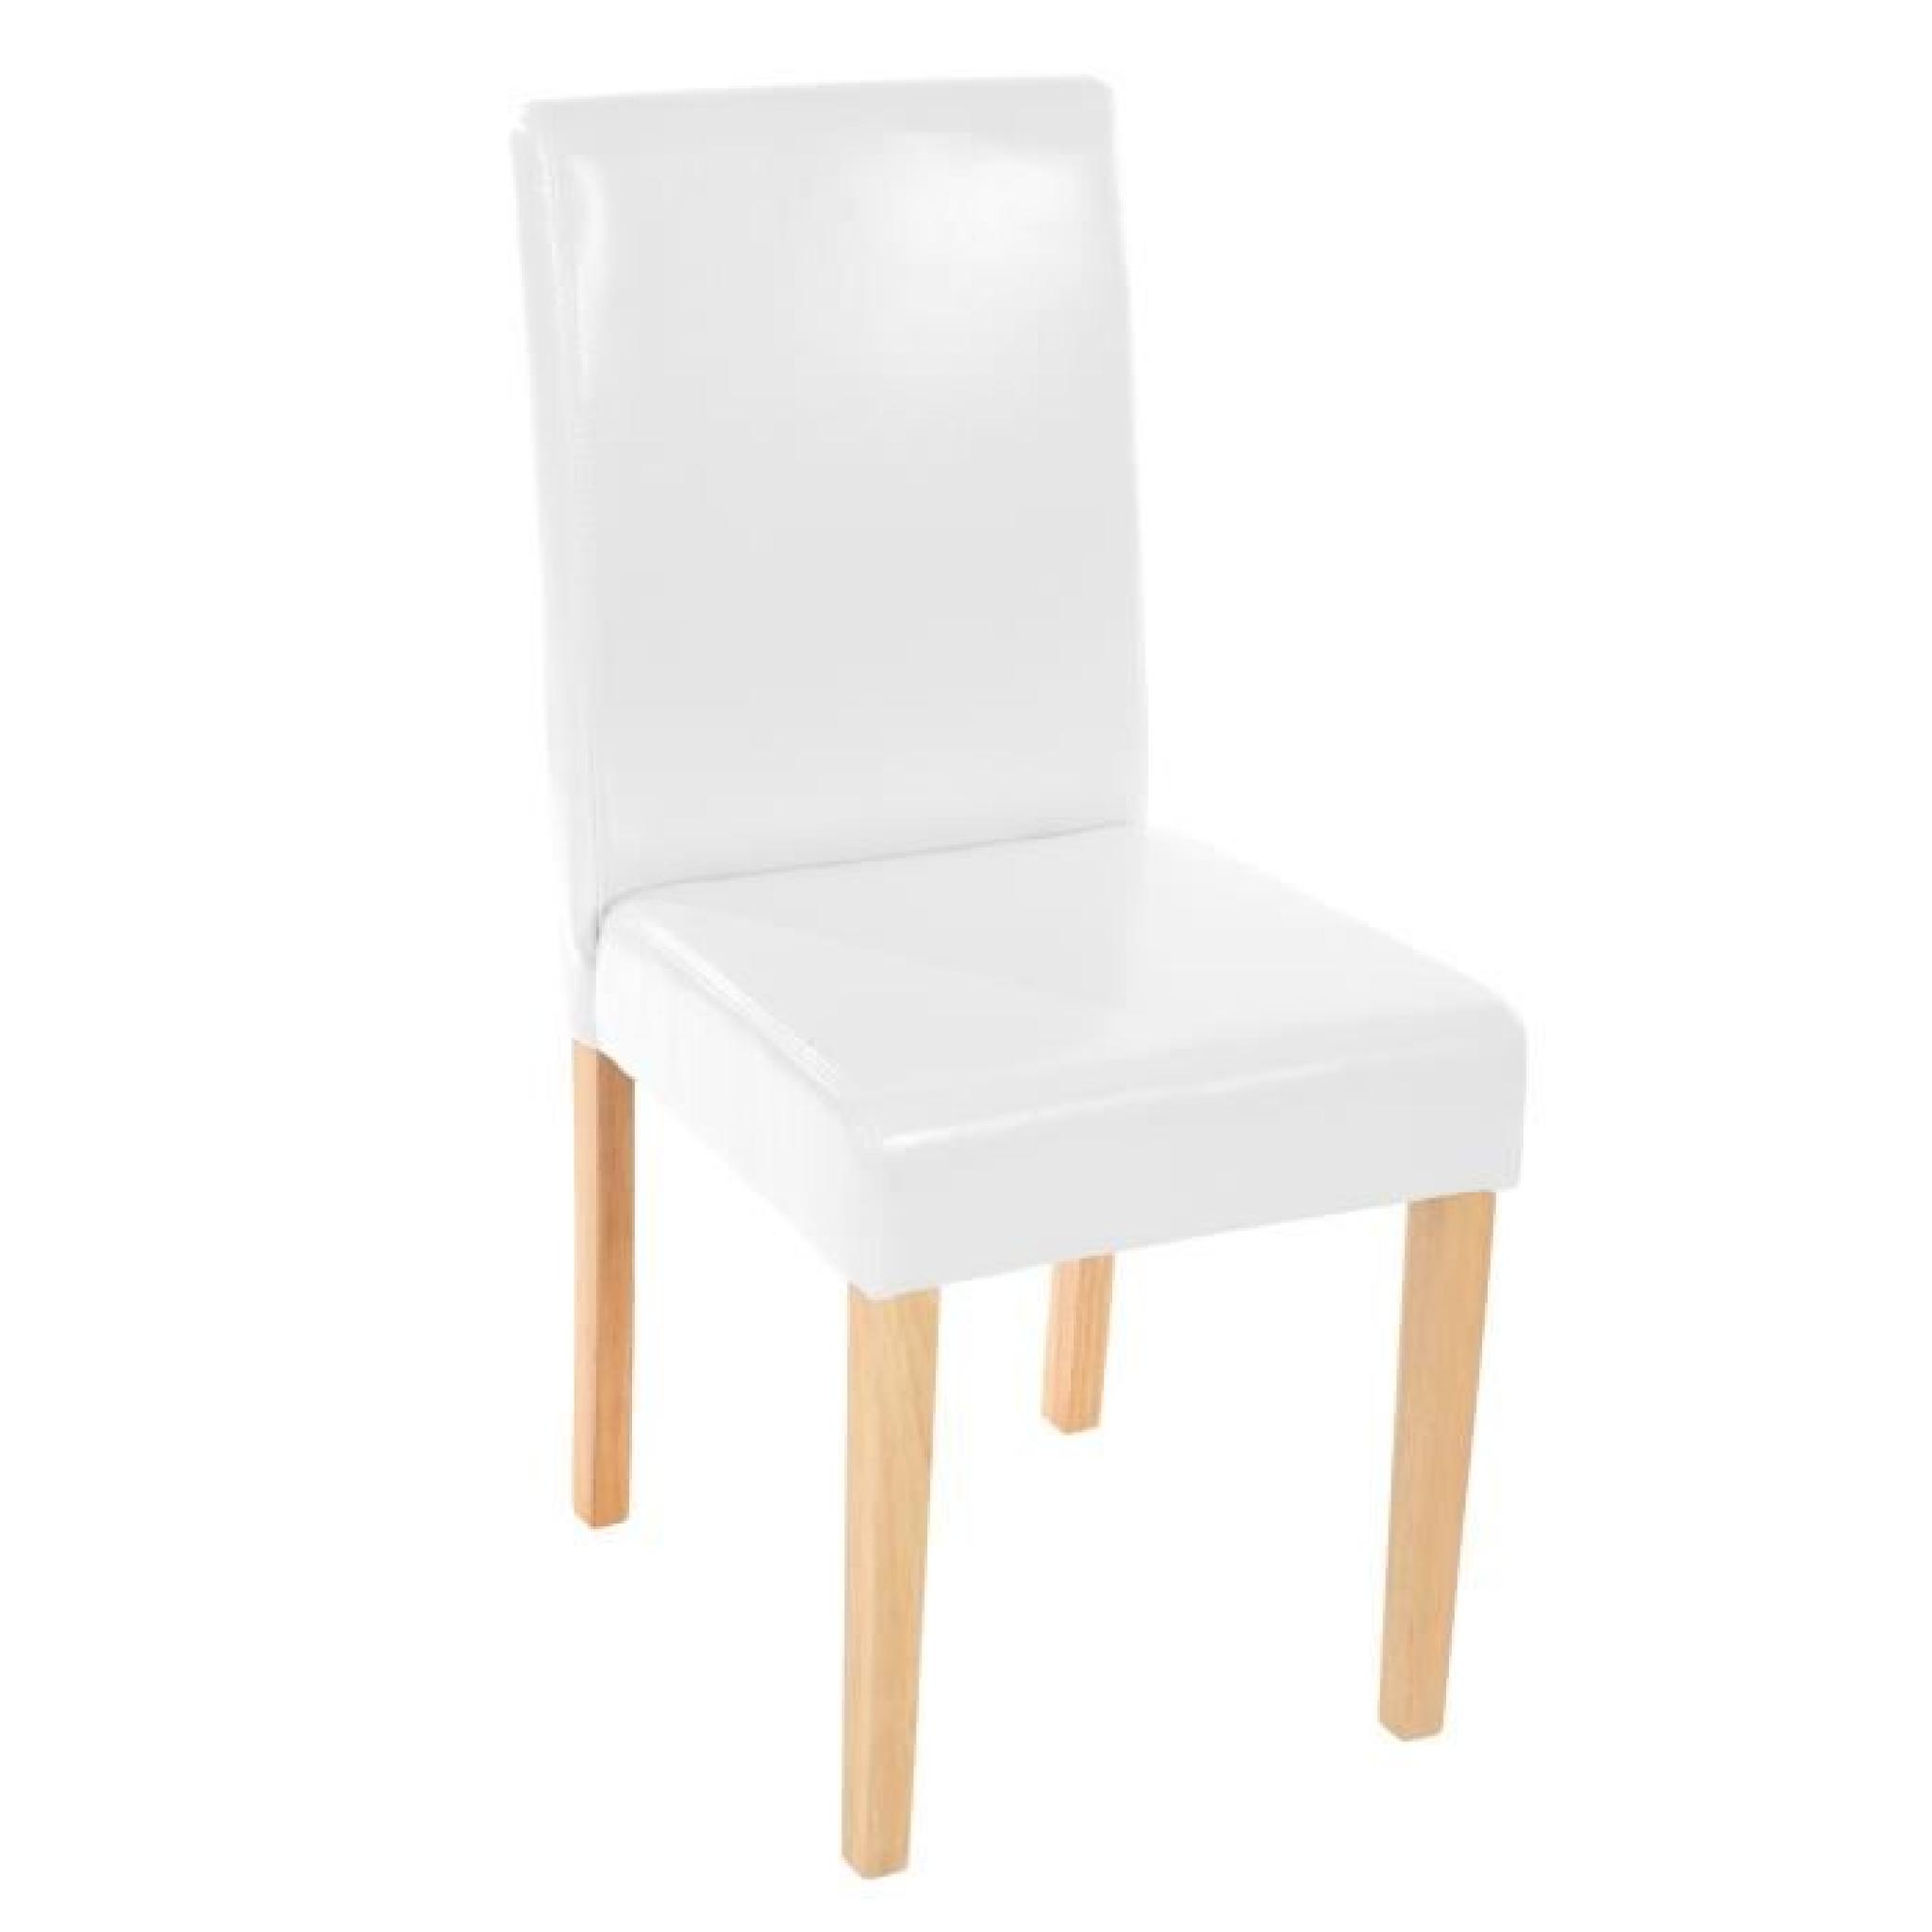  2 chaises Blanc similicuir pieds clair très confortable pas cher